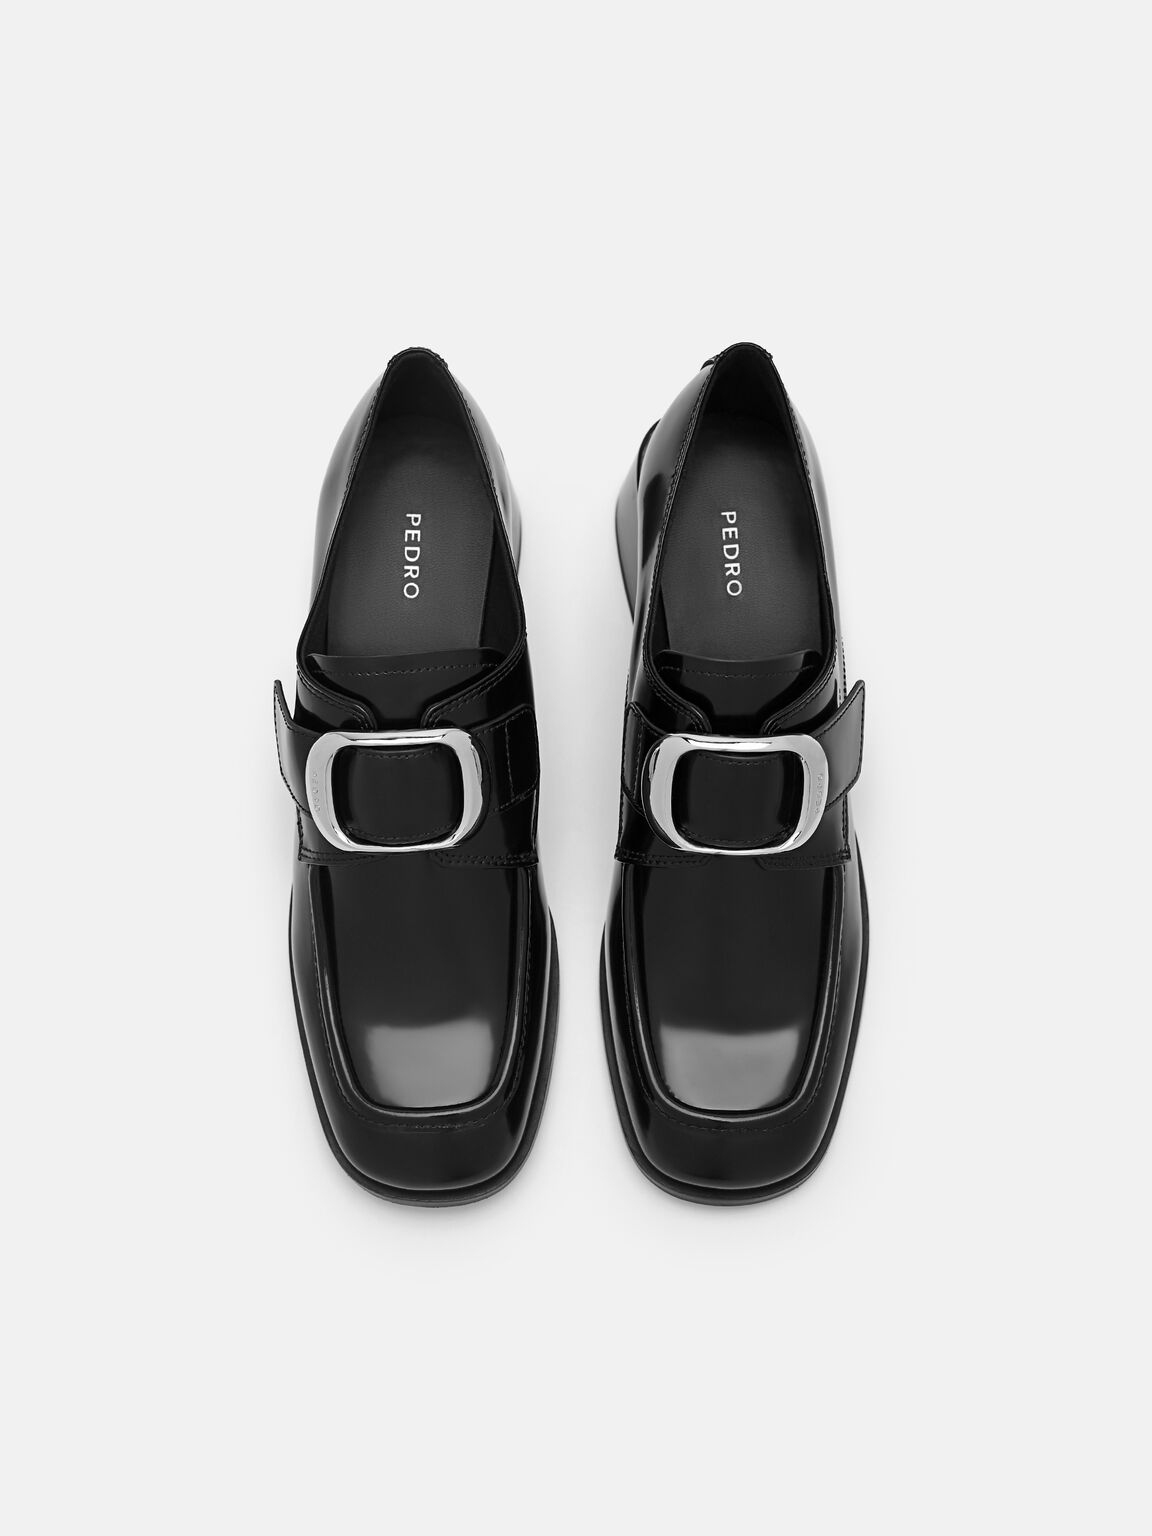 Eden Leather Heel Loafers, Black, hi-res